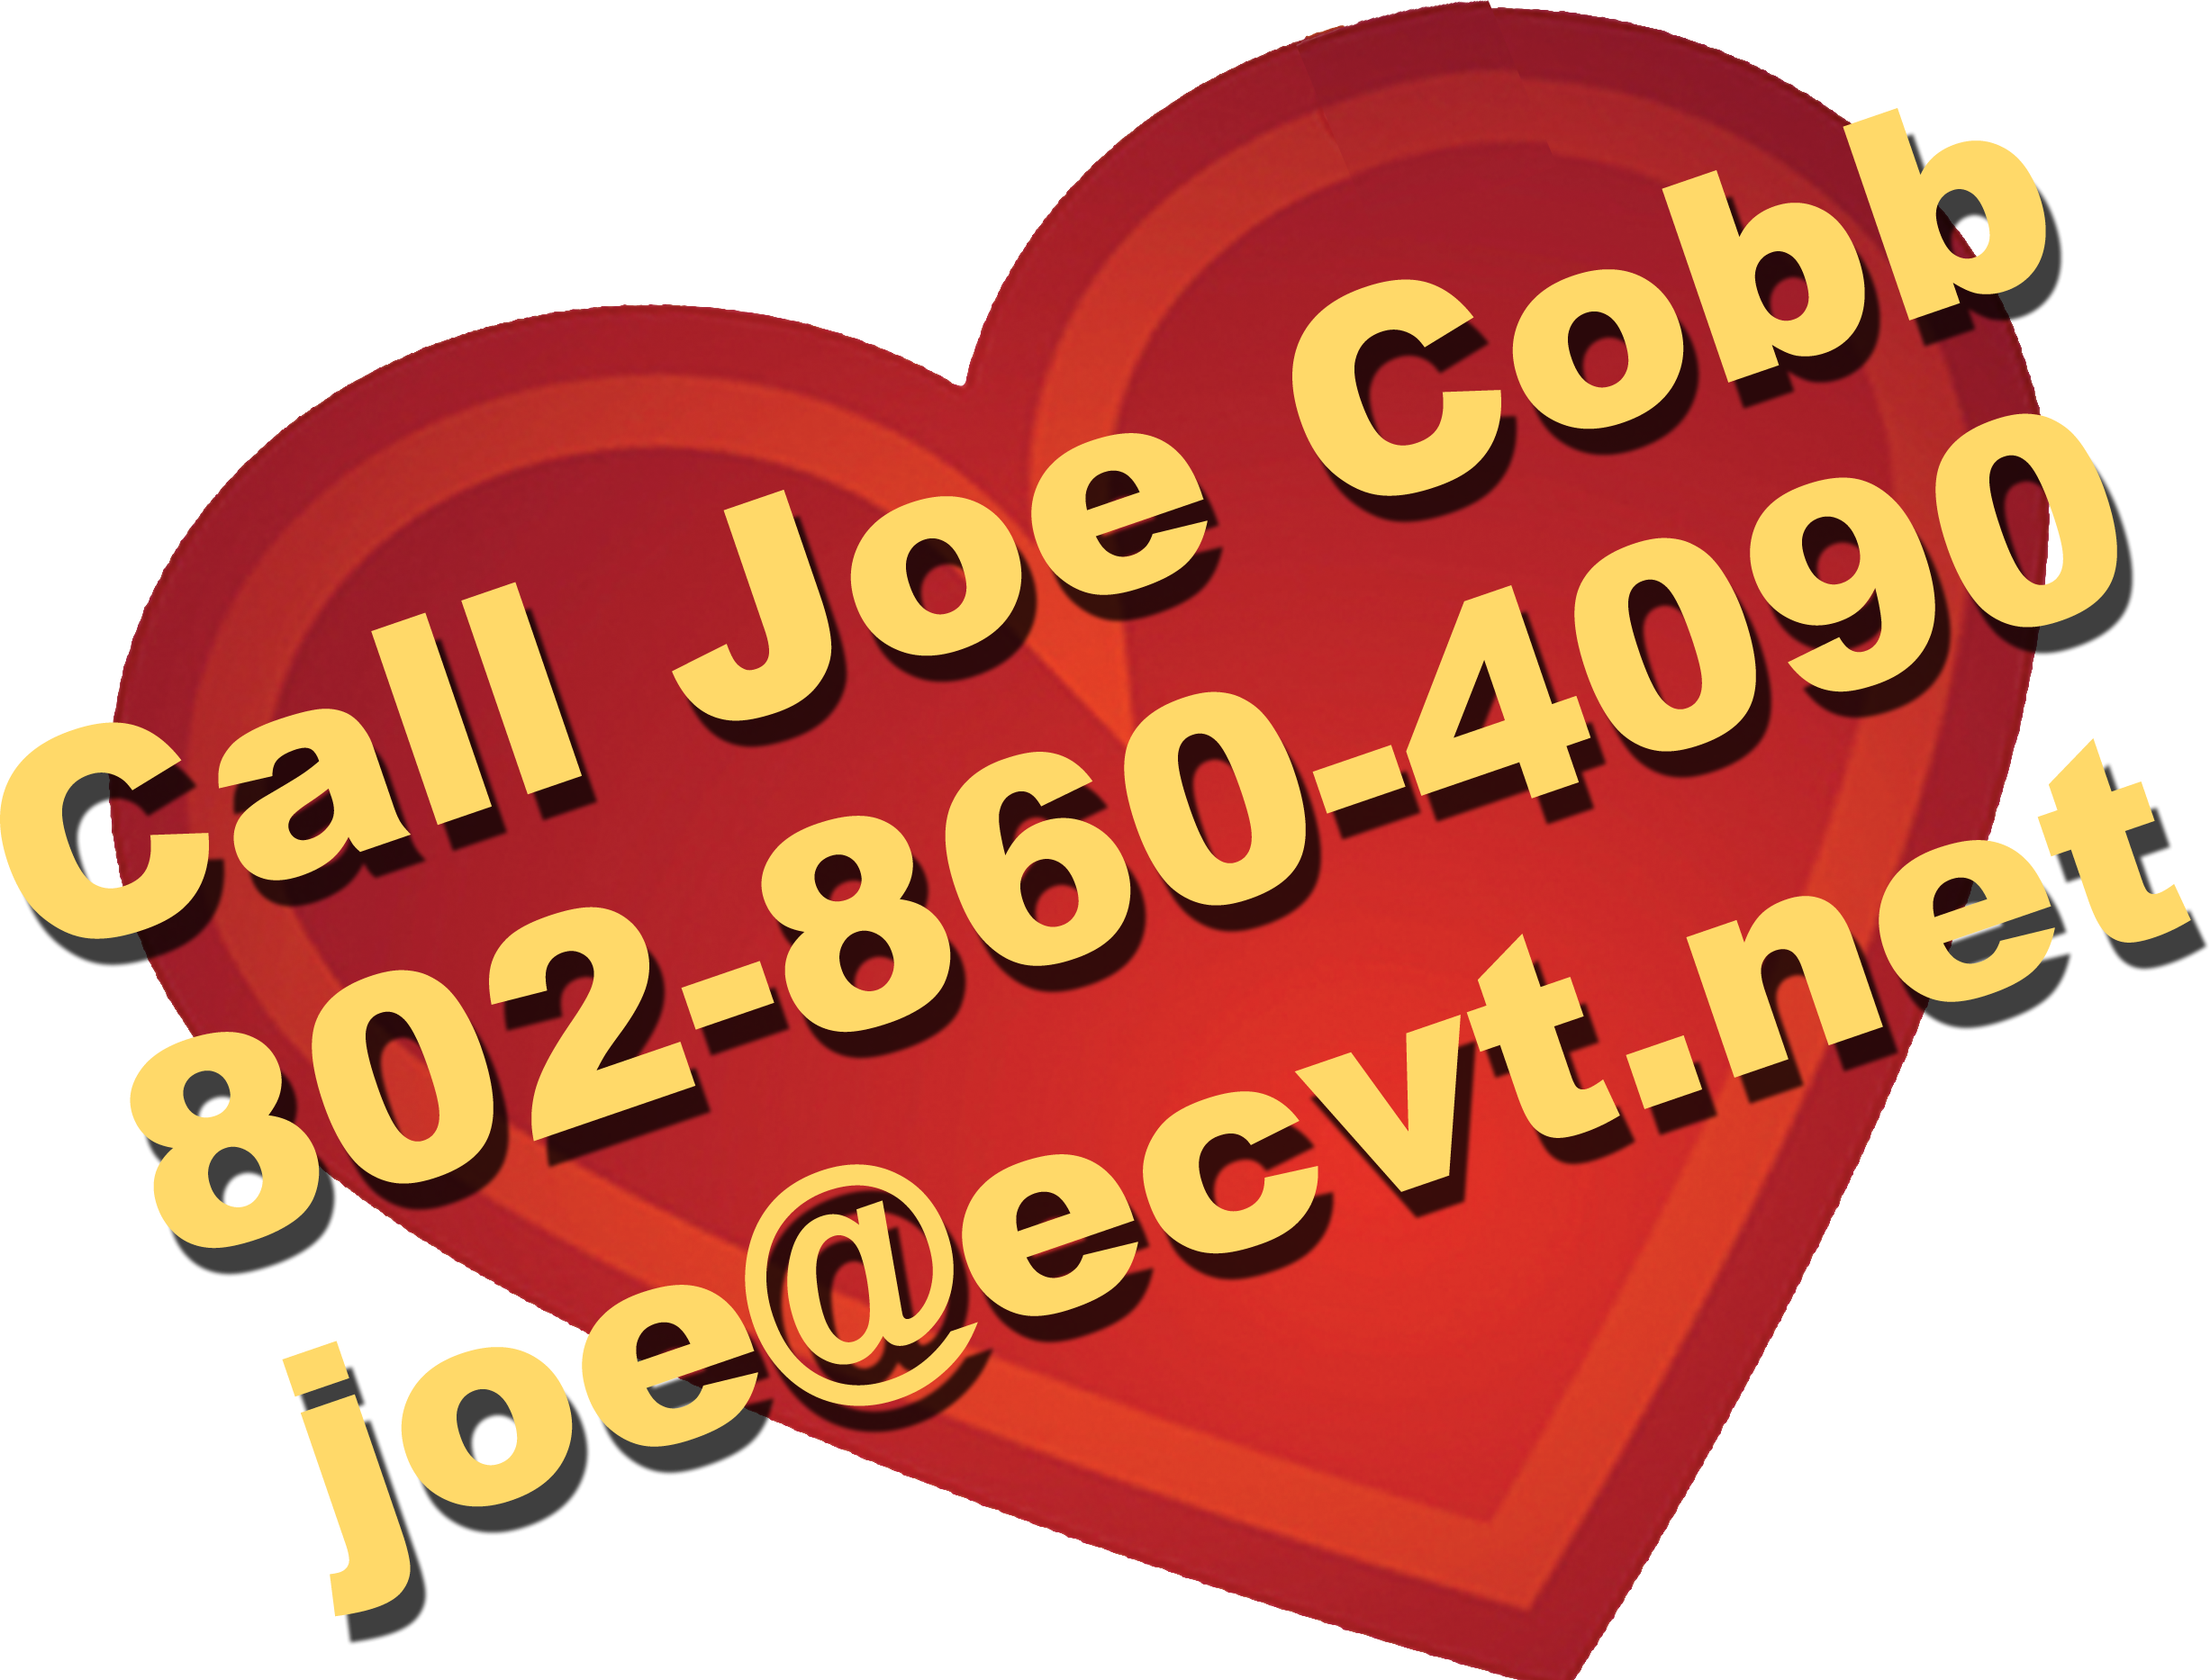 Call Joe at 802-860-4090